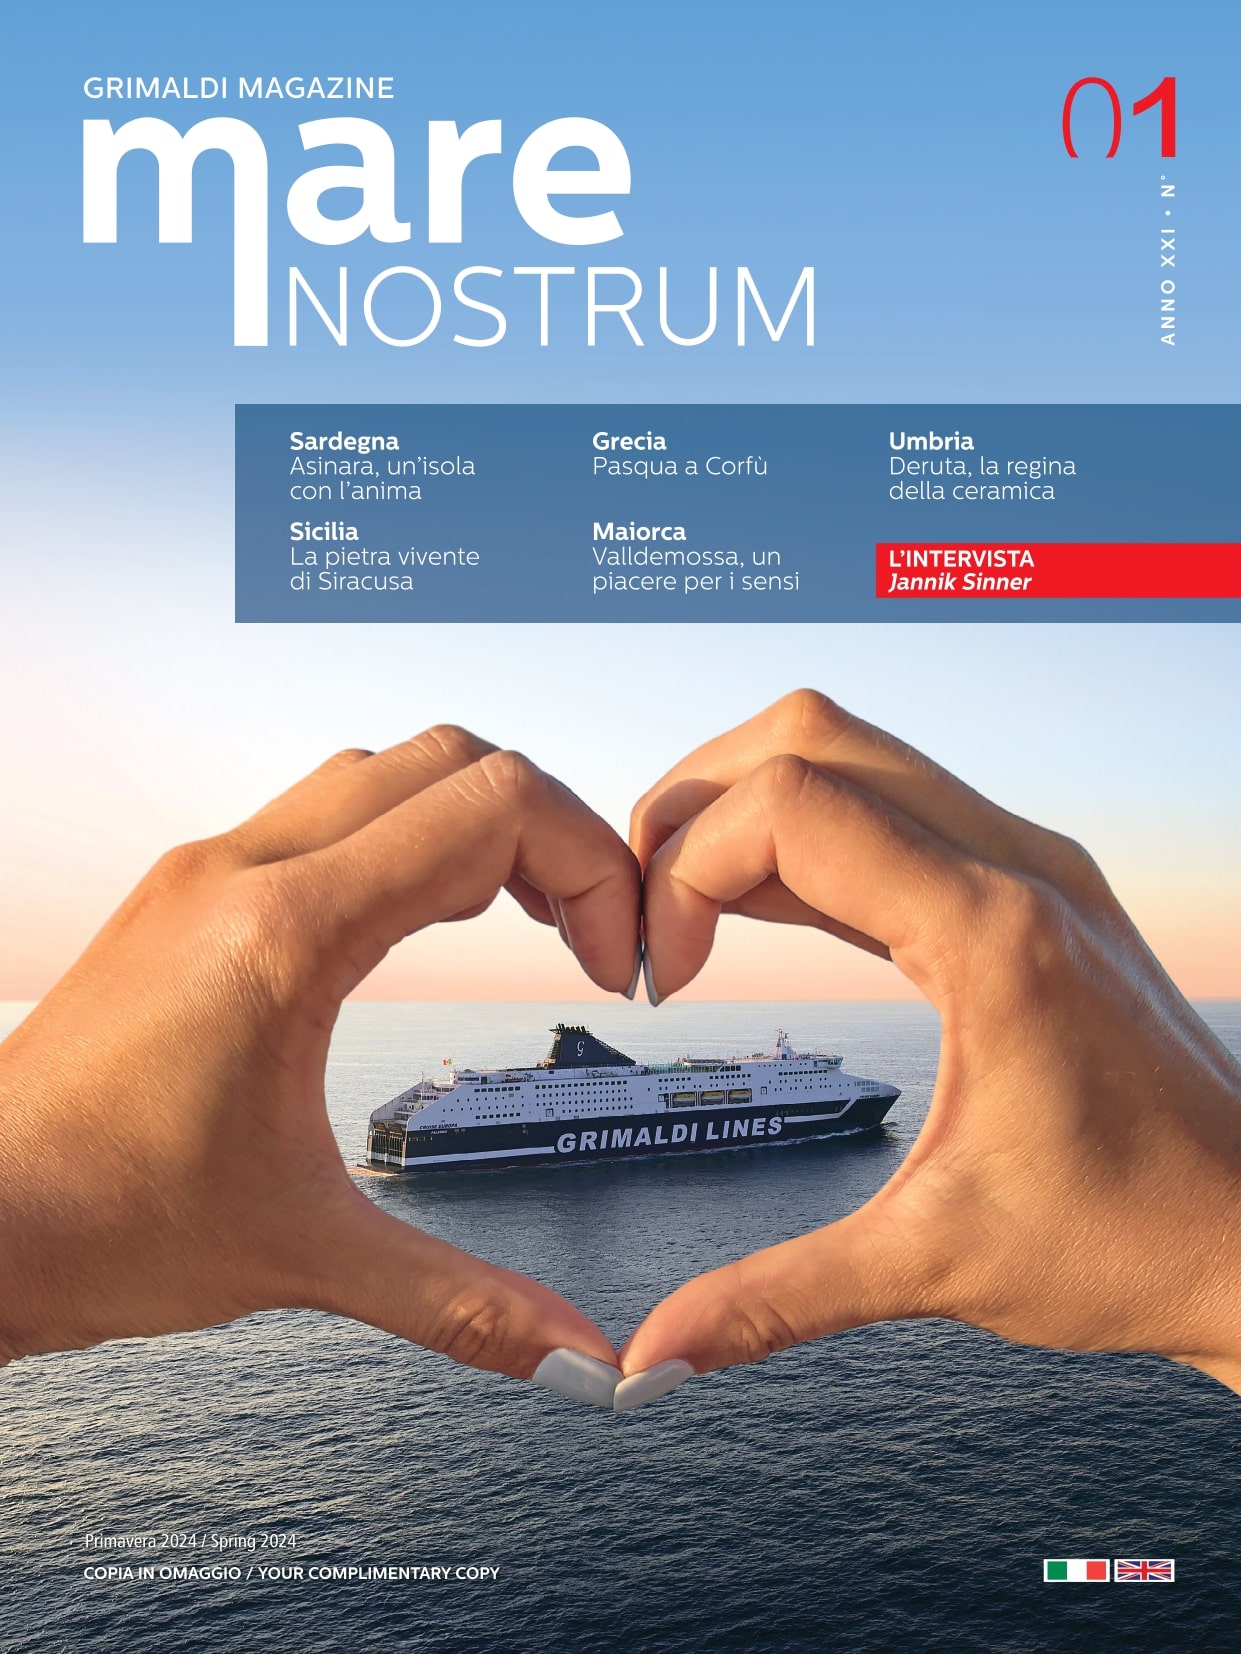 Grimaldi Magazine Mare Nostrum (Anno XXI n. 1) Italiano-Inglese